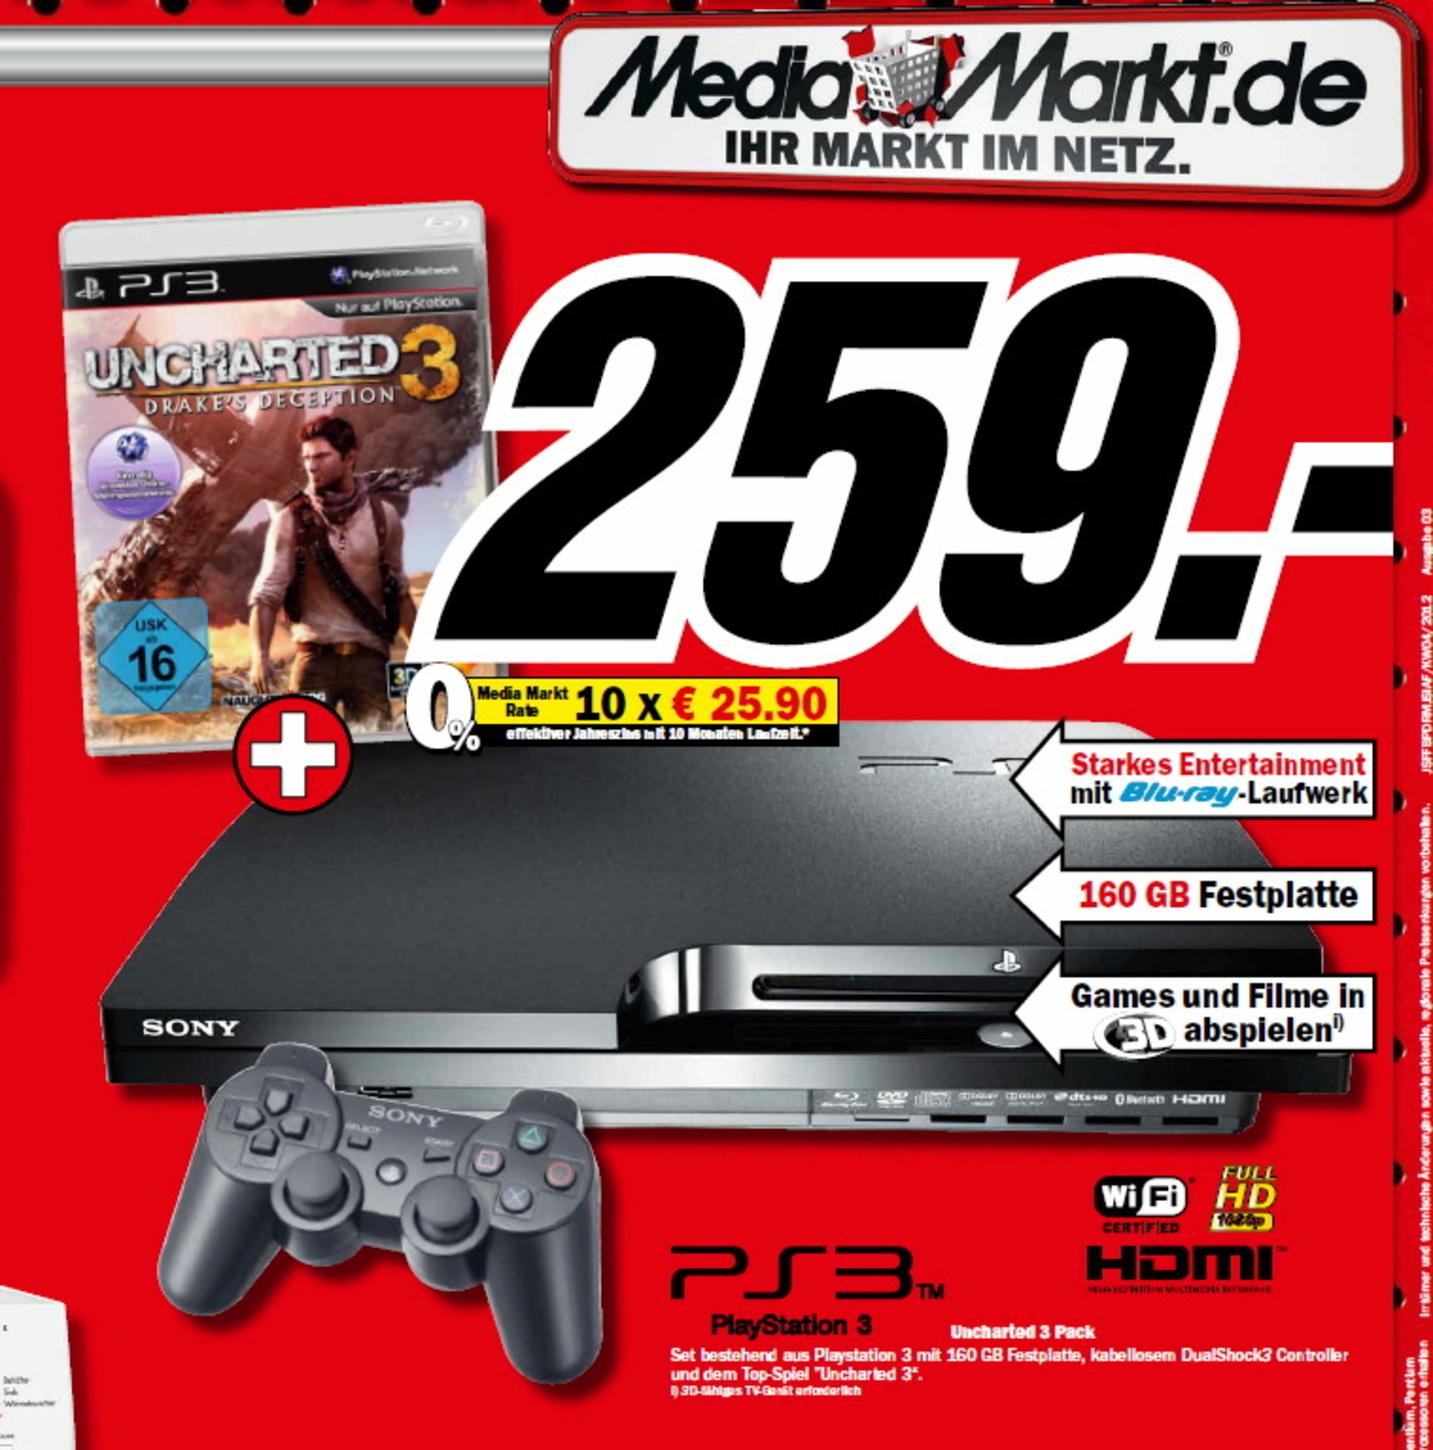 PS3 feiert bei Media Markt Onlinedebüt